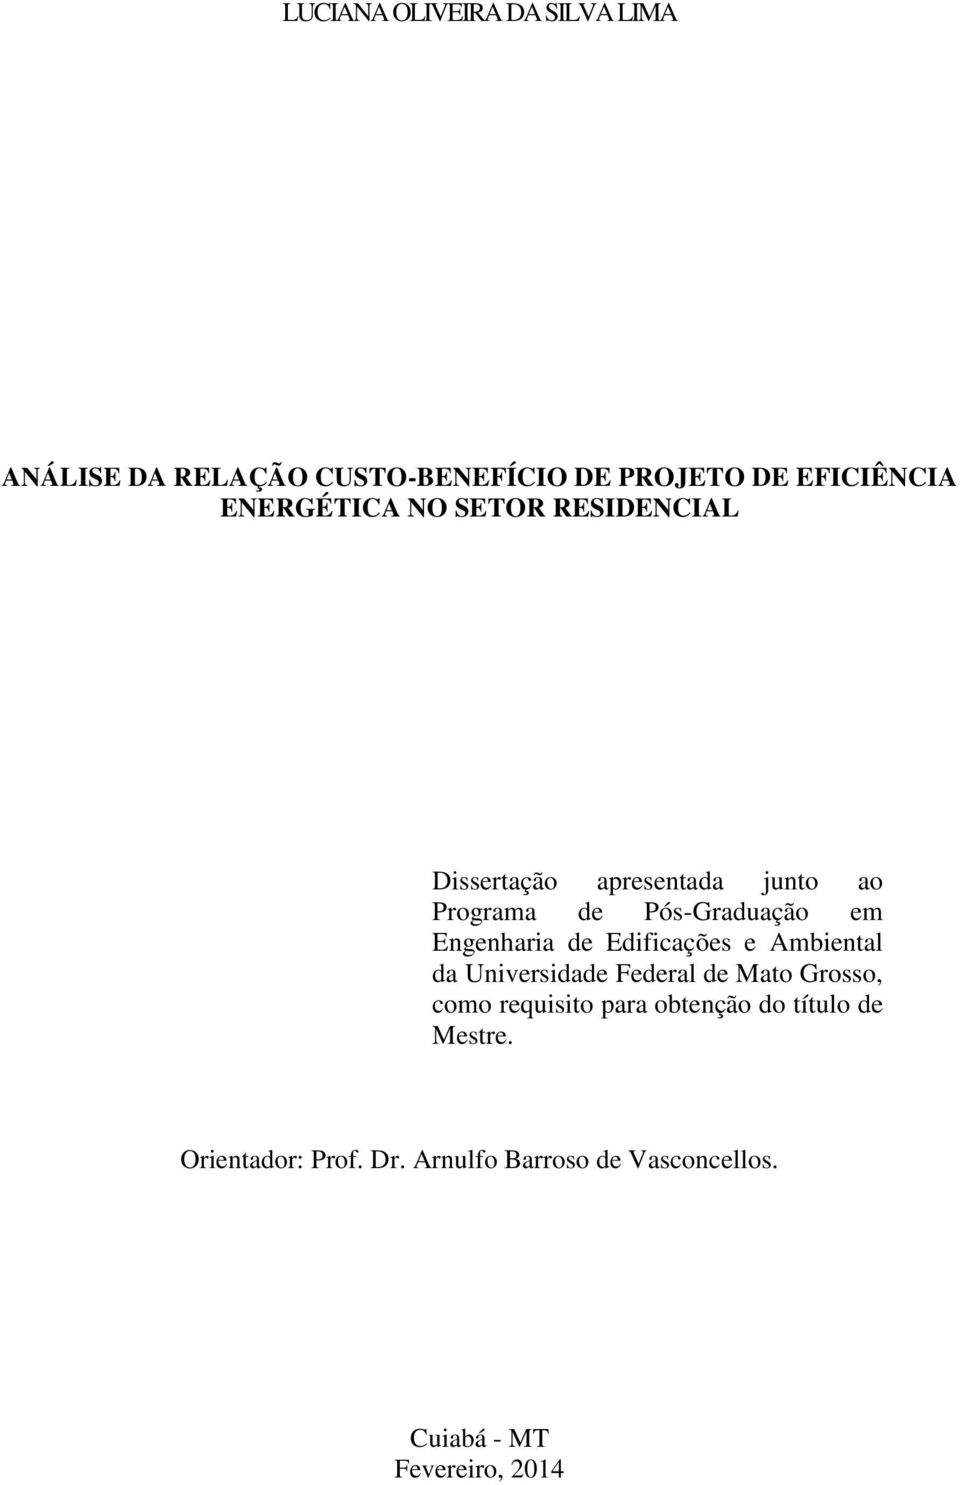 Engenharia de Edificações e Ambiental da Universidade Federal de Mato Grosso, como requisito para